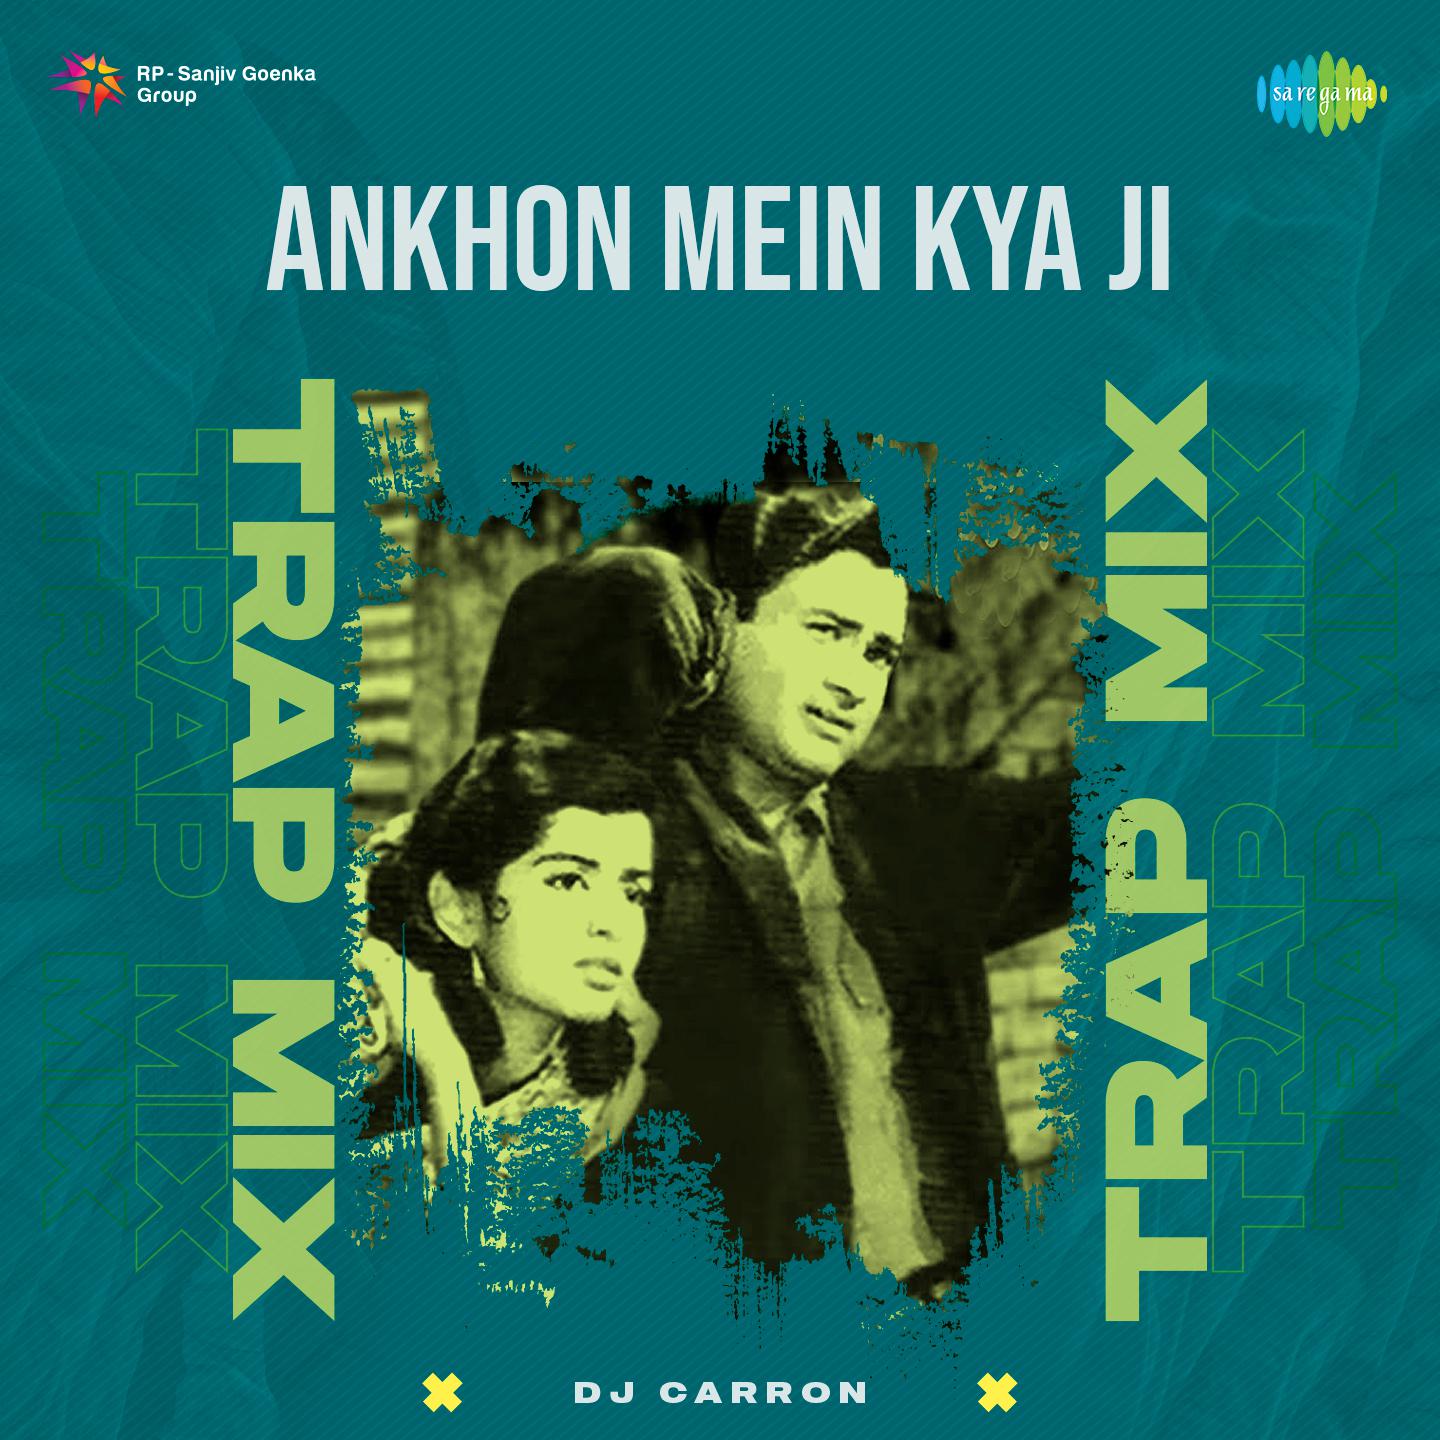 DJ Carron - Ankhon Mein Kya Ji - Trap Mix